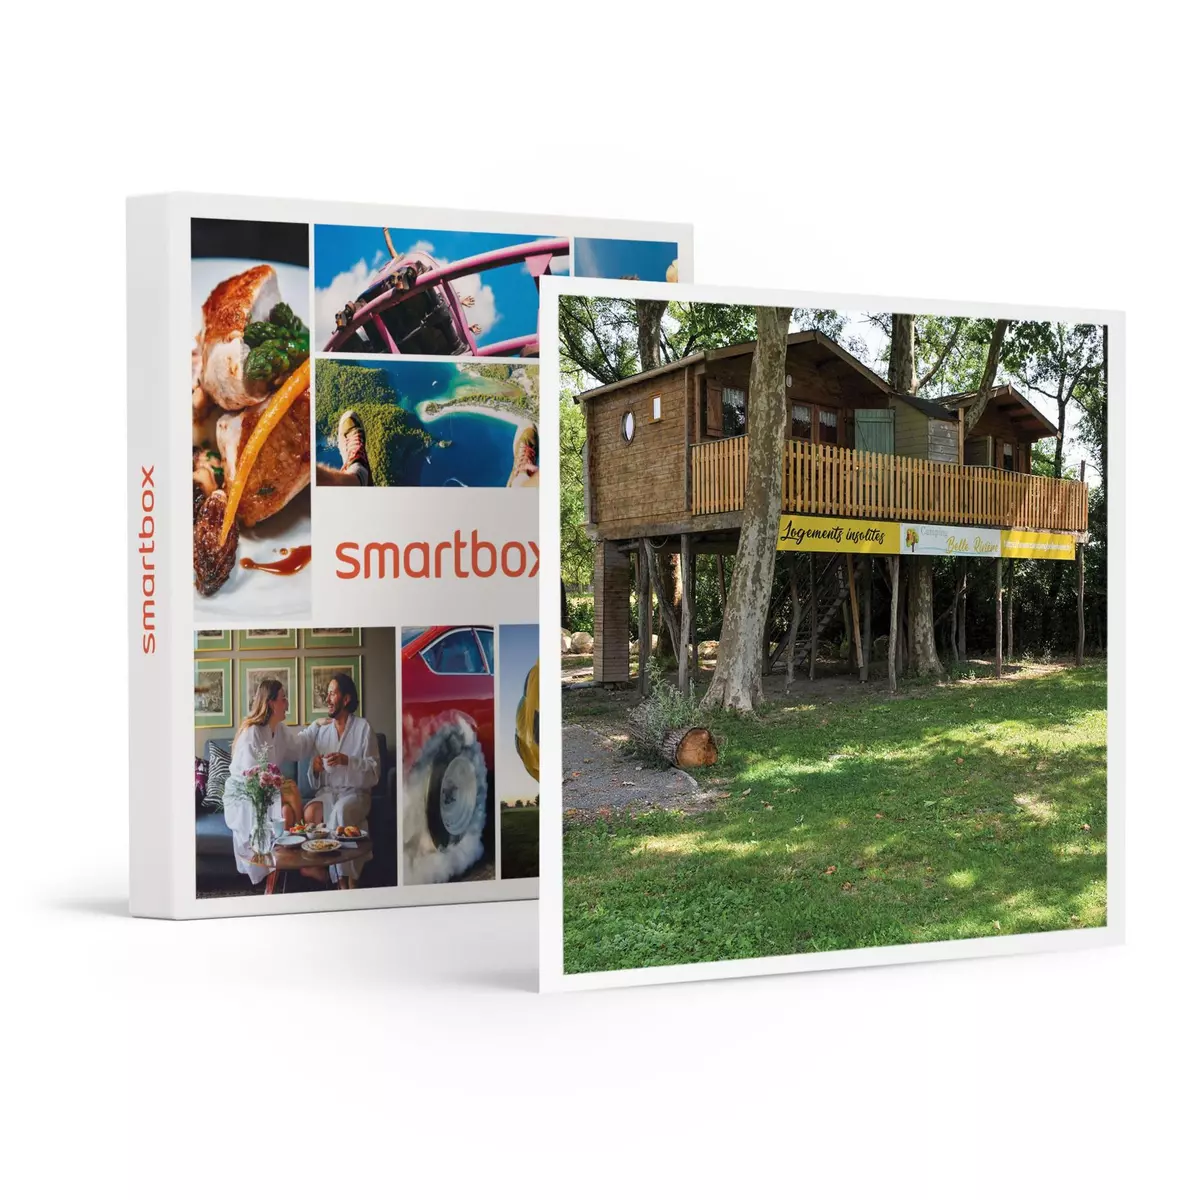 Smartbox 3 jours insolites en cabane perchée dans un arbre près de Saintes - Coffret Cadeau Séjour